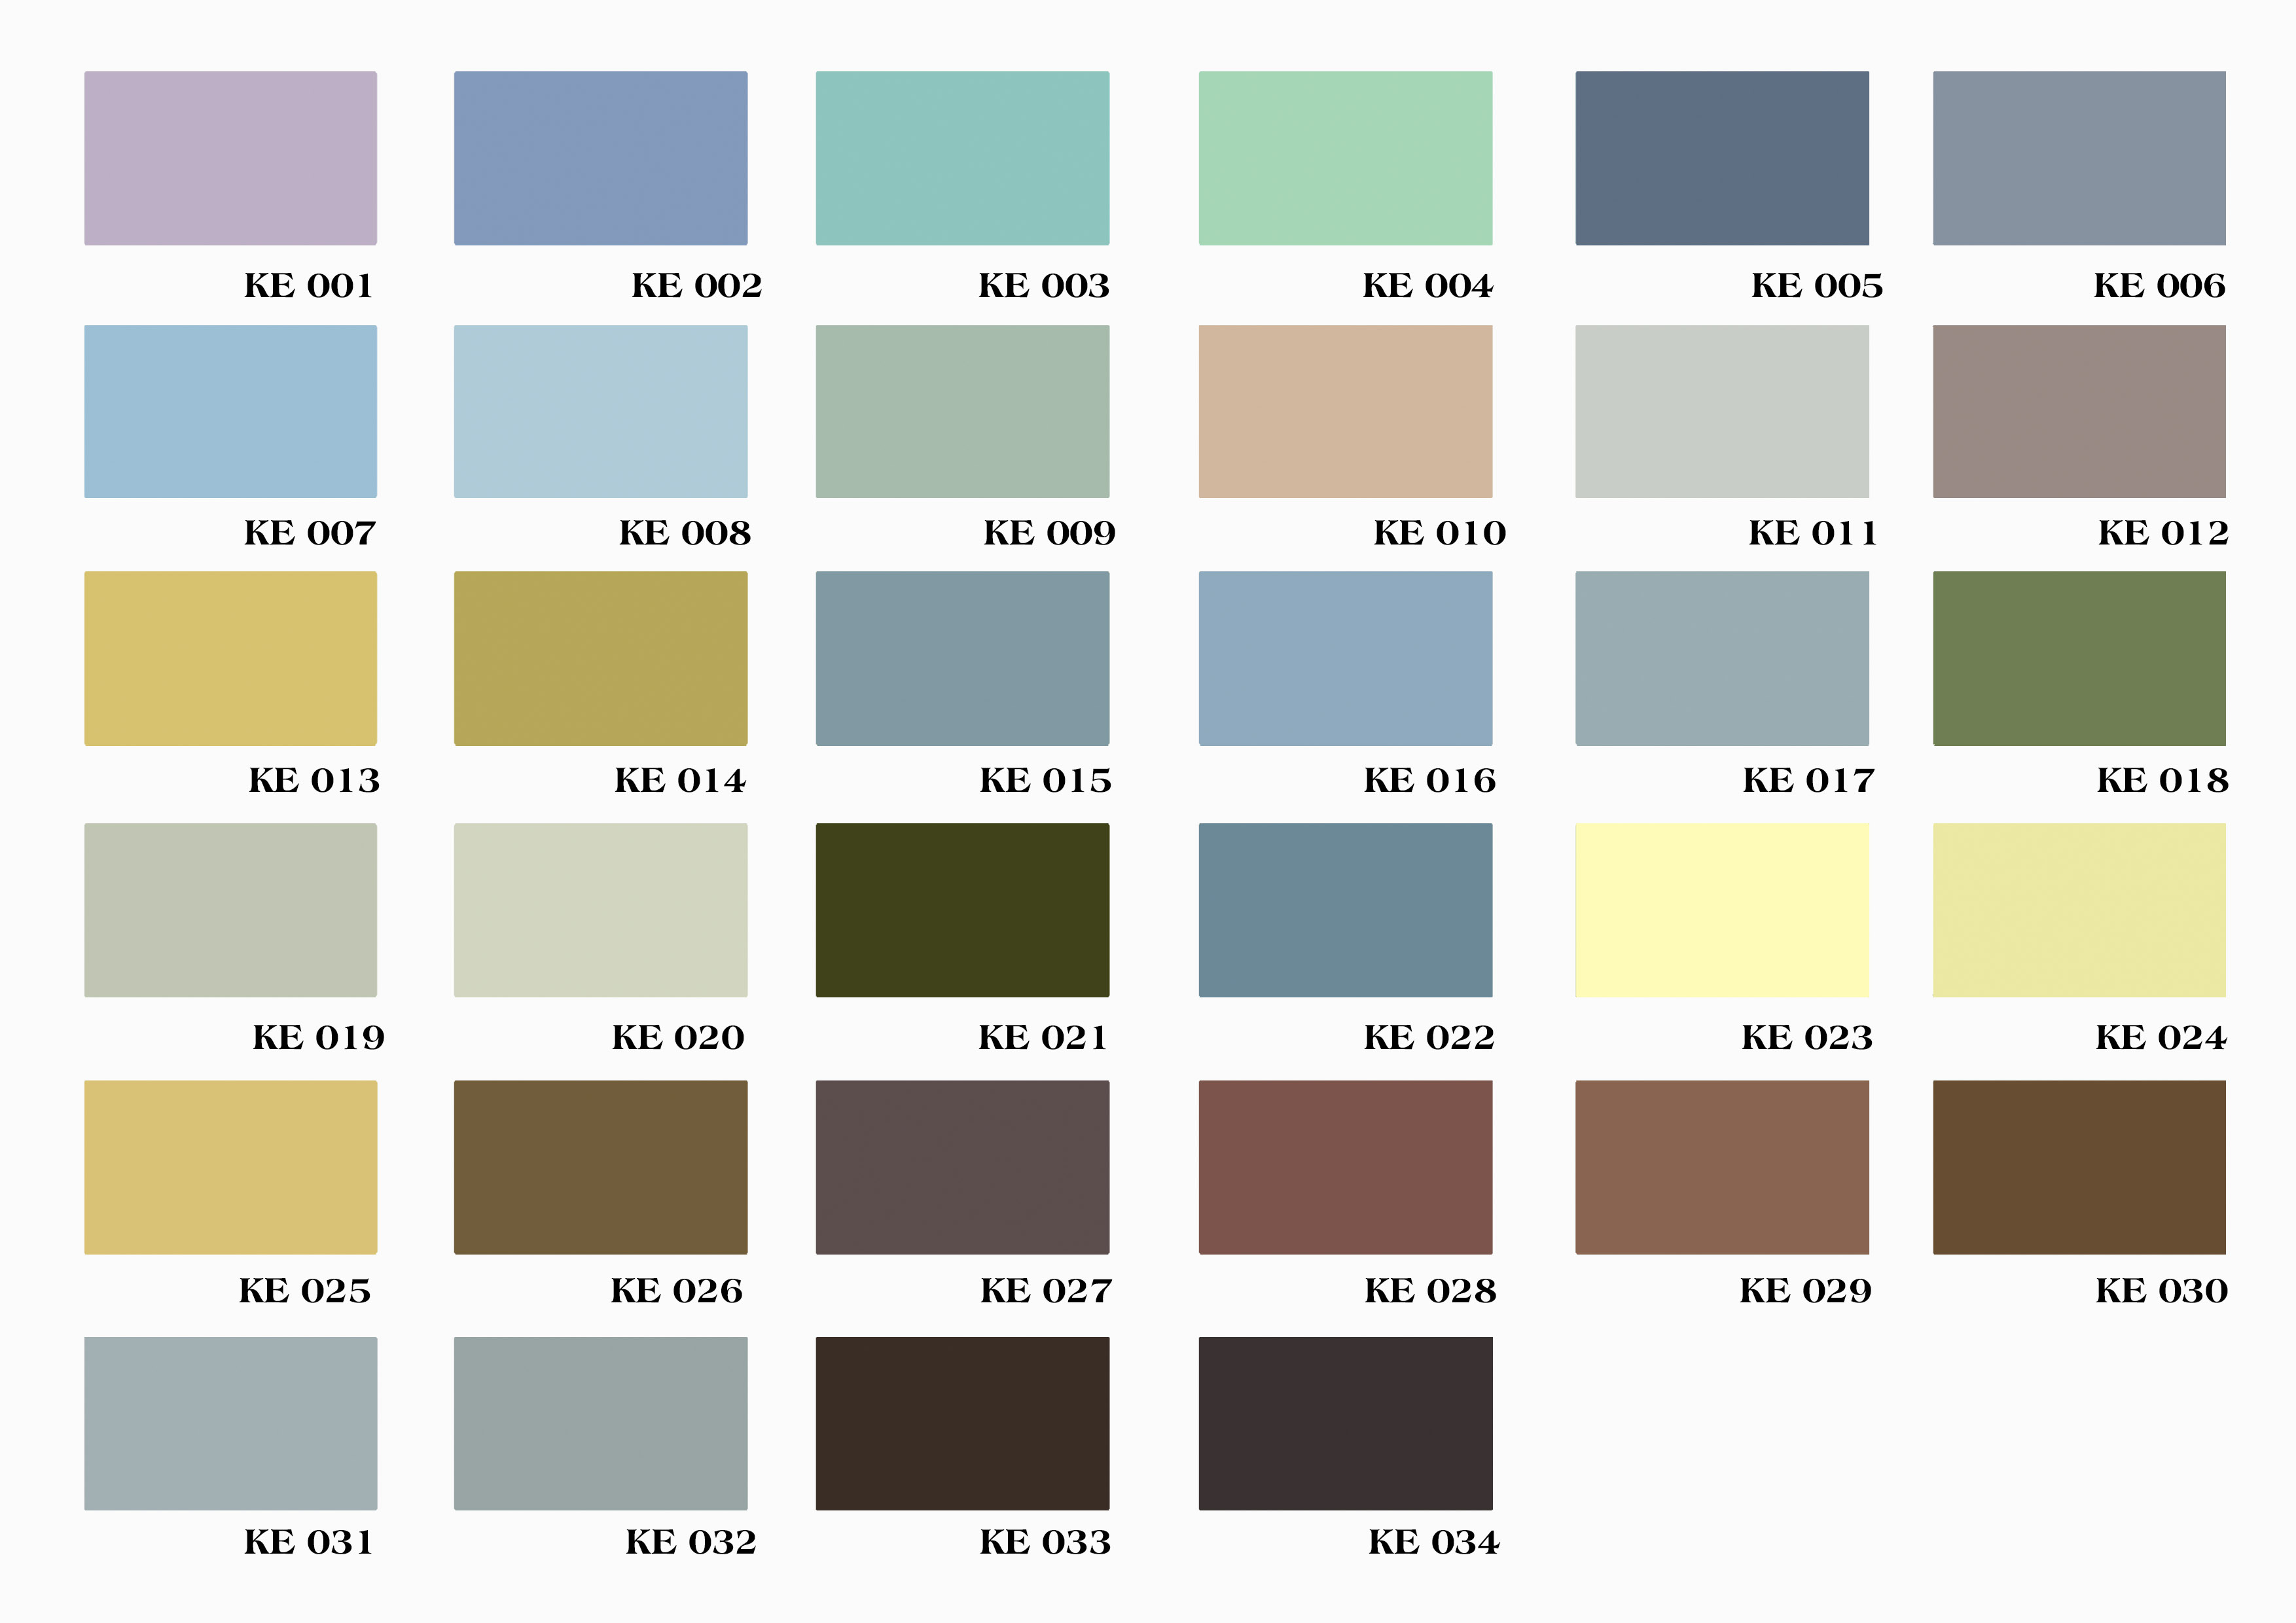 Nếu bạn mong muốn một bề mặt sơn xuất sắc và thân thiện với môi trường cho nhà bạn, hãy xem bảng màu sơn Kansai Eco Sheen. Với công nghệ tiên tiến, bảng màu này mang đến các gam màu ngoại thất đẹp mắt và tiết kiệm năng lượng. Hãy biến ngôi nhà của bạn thành một địa điểm sống cảm xúc với Kansai.